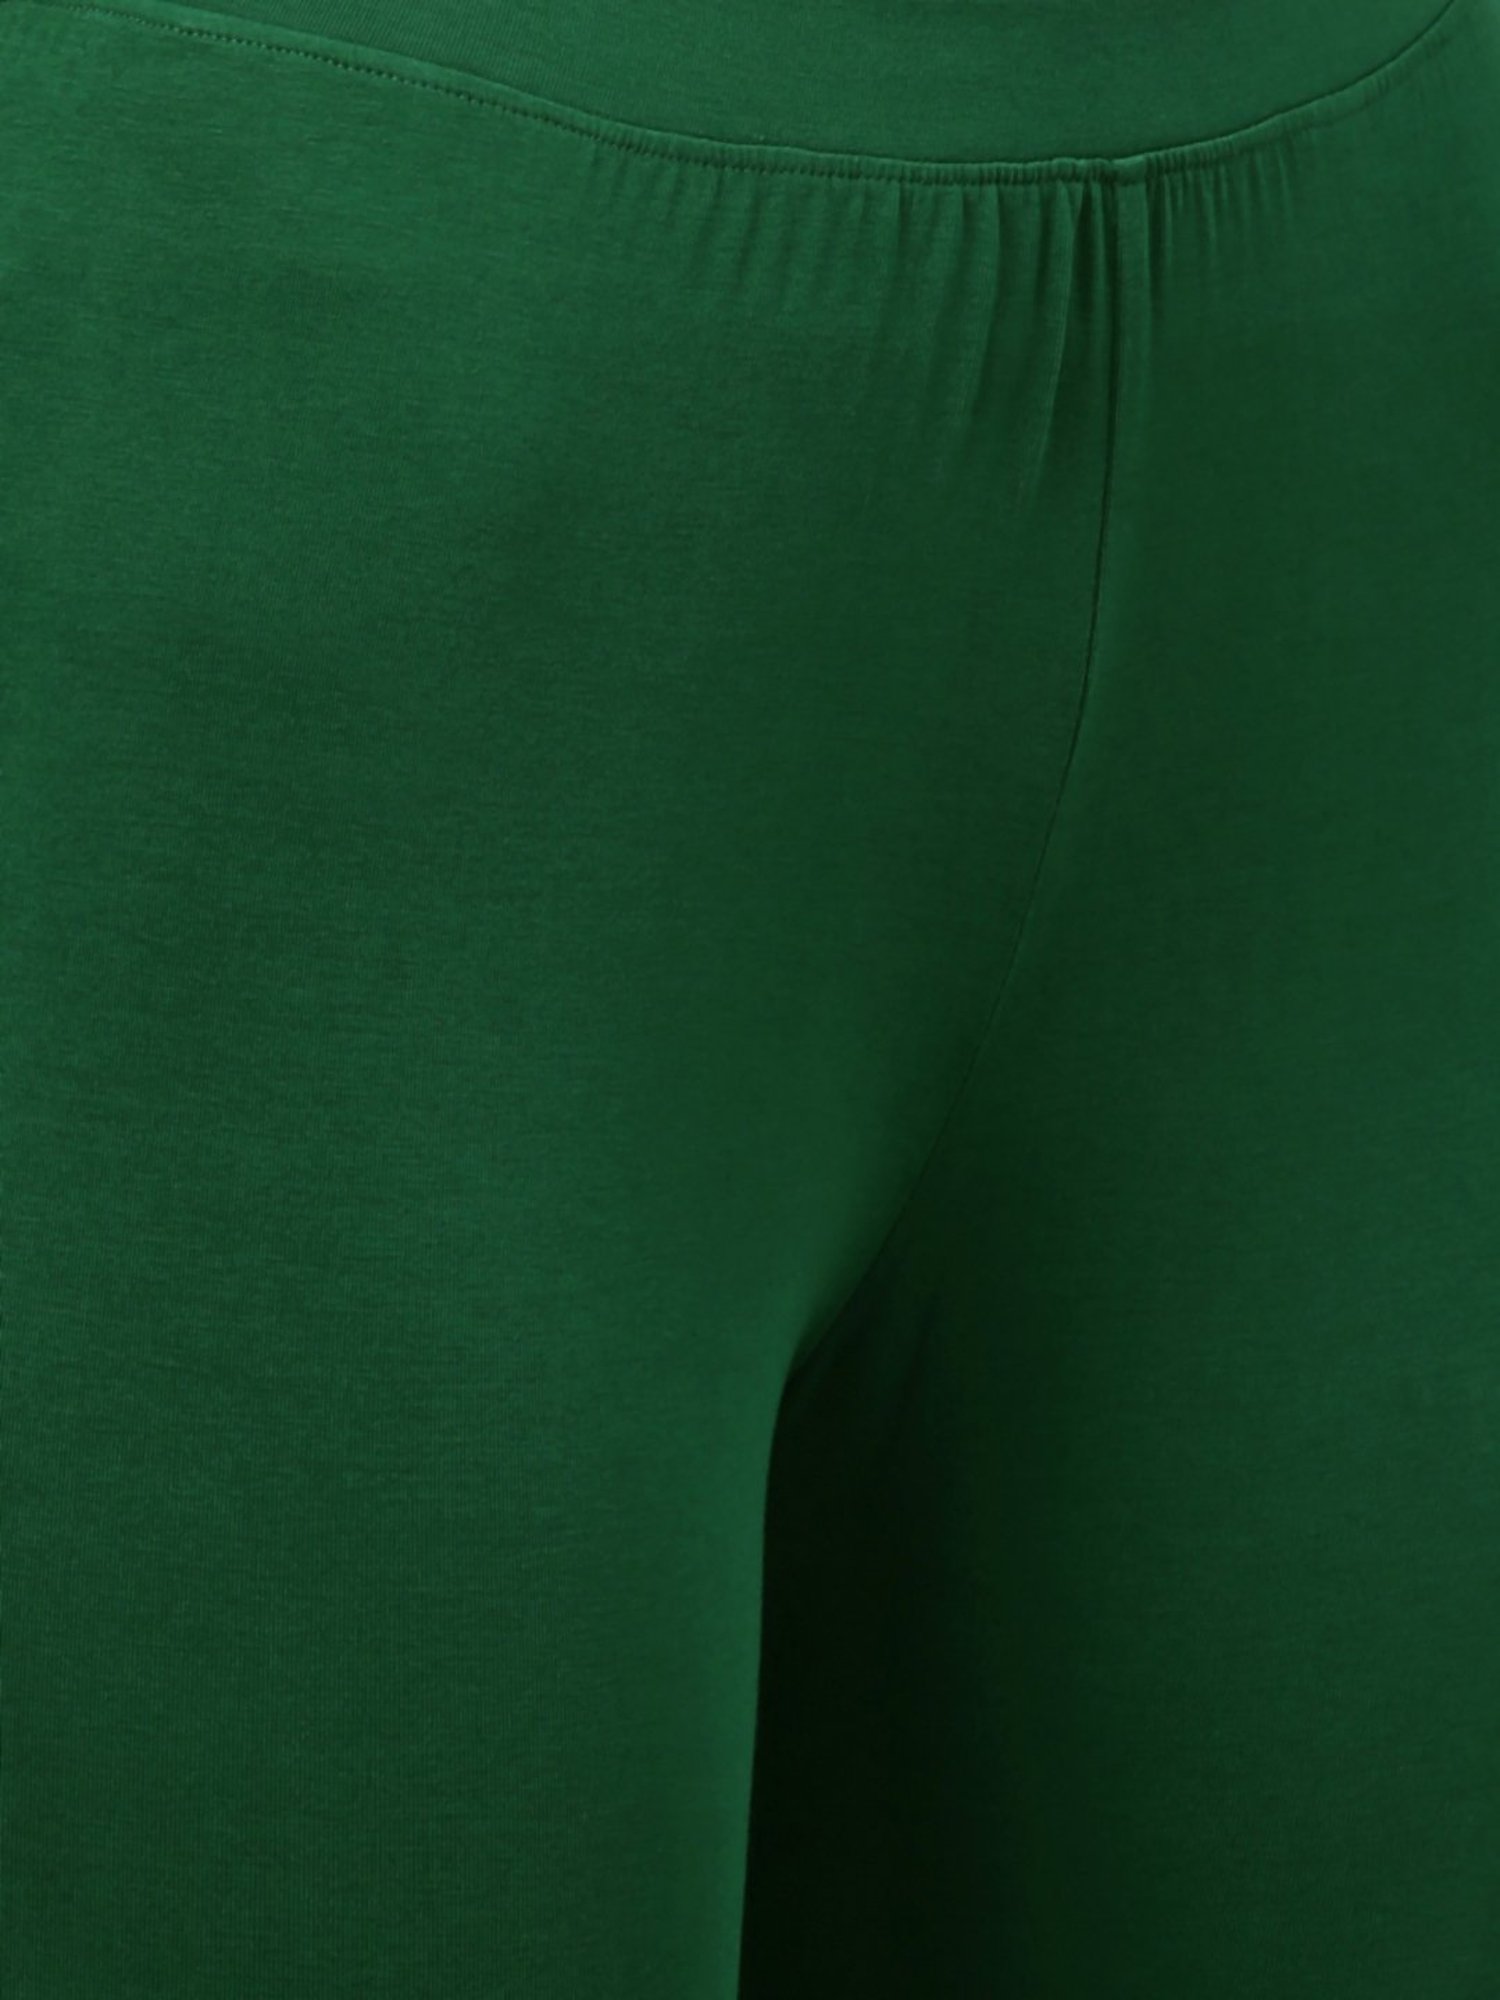 Buy Kryptic Bottle Green Leggings for Women's Online @ Tata CLiQ